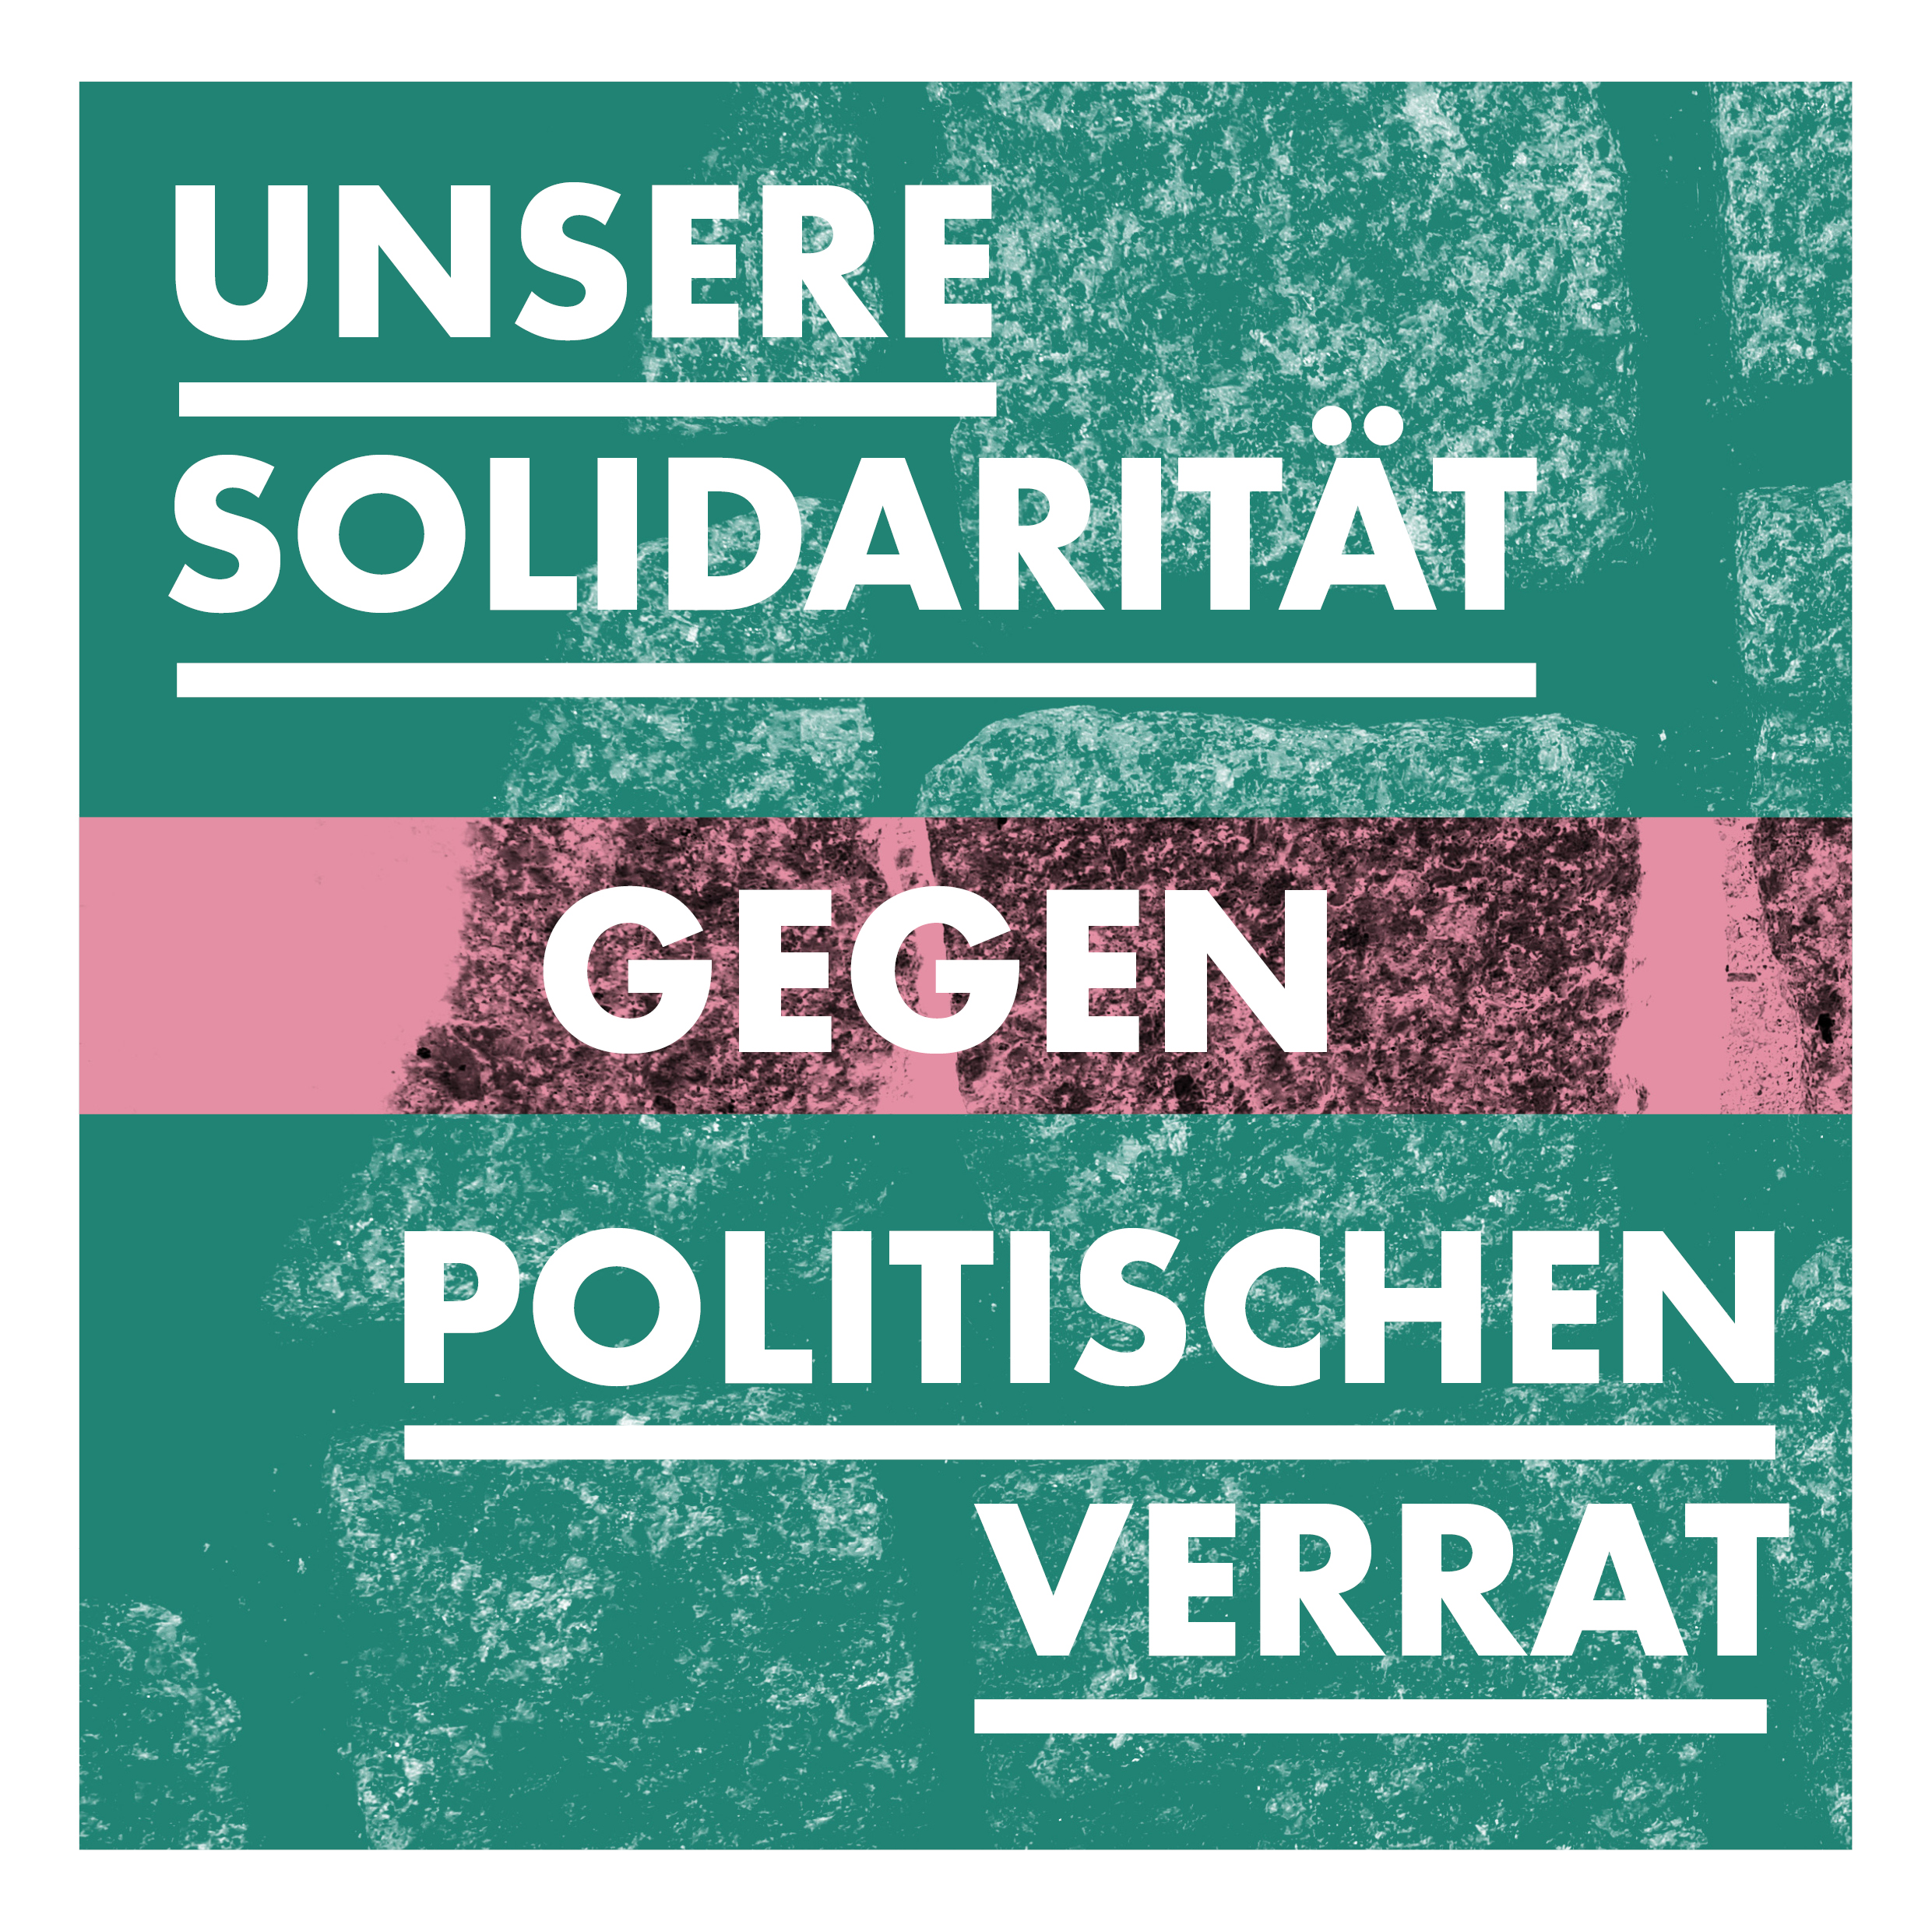 You are currently viewing Unsere Solidarität gegen politischen Verrat